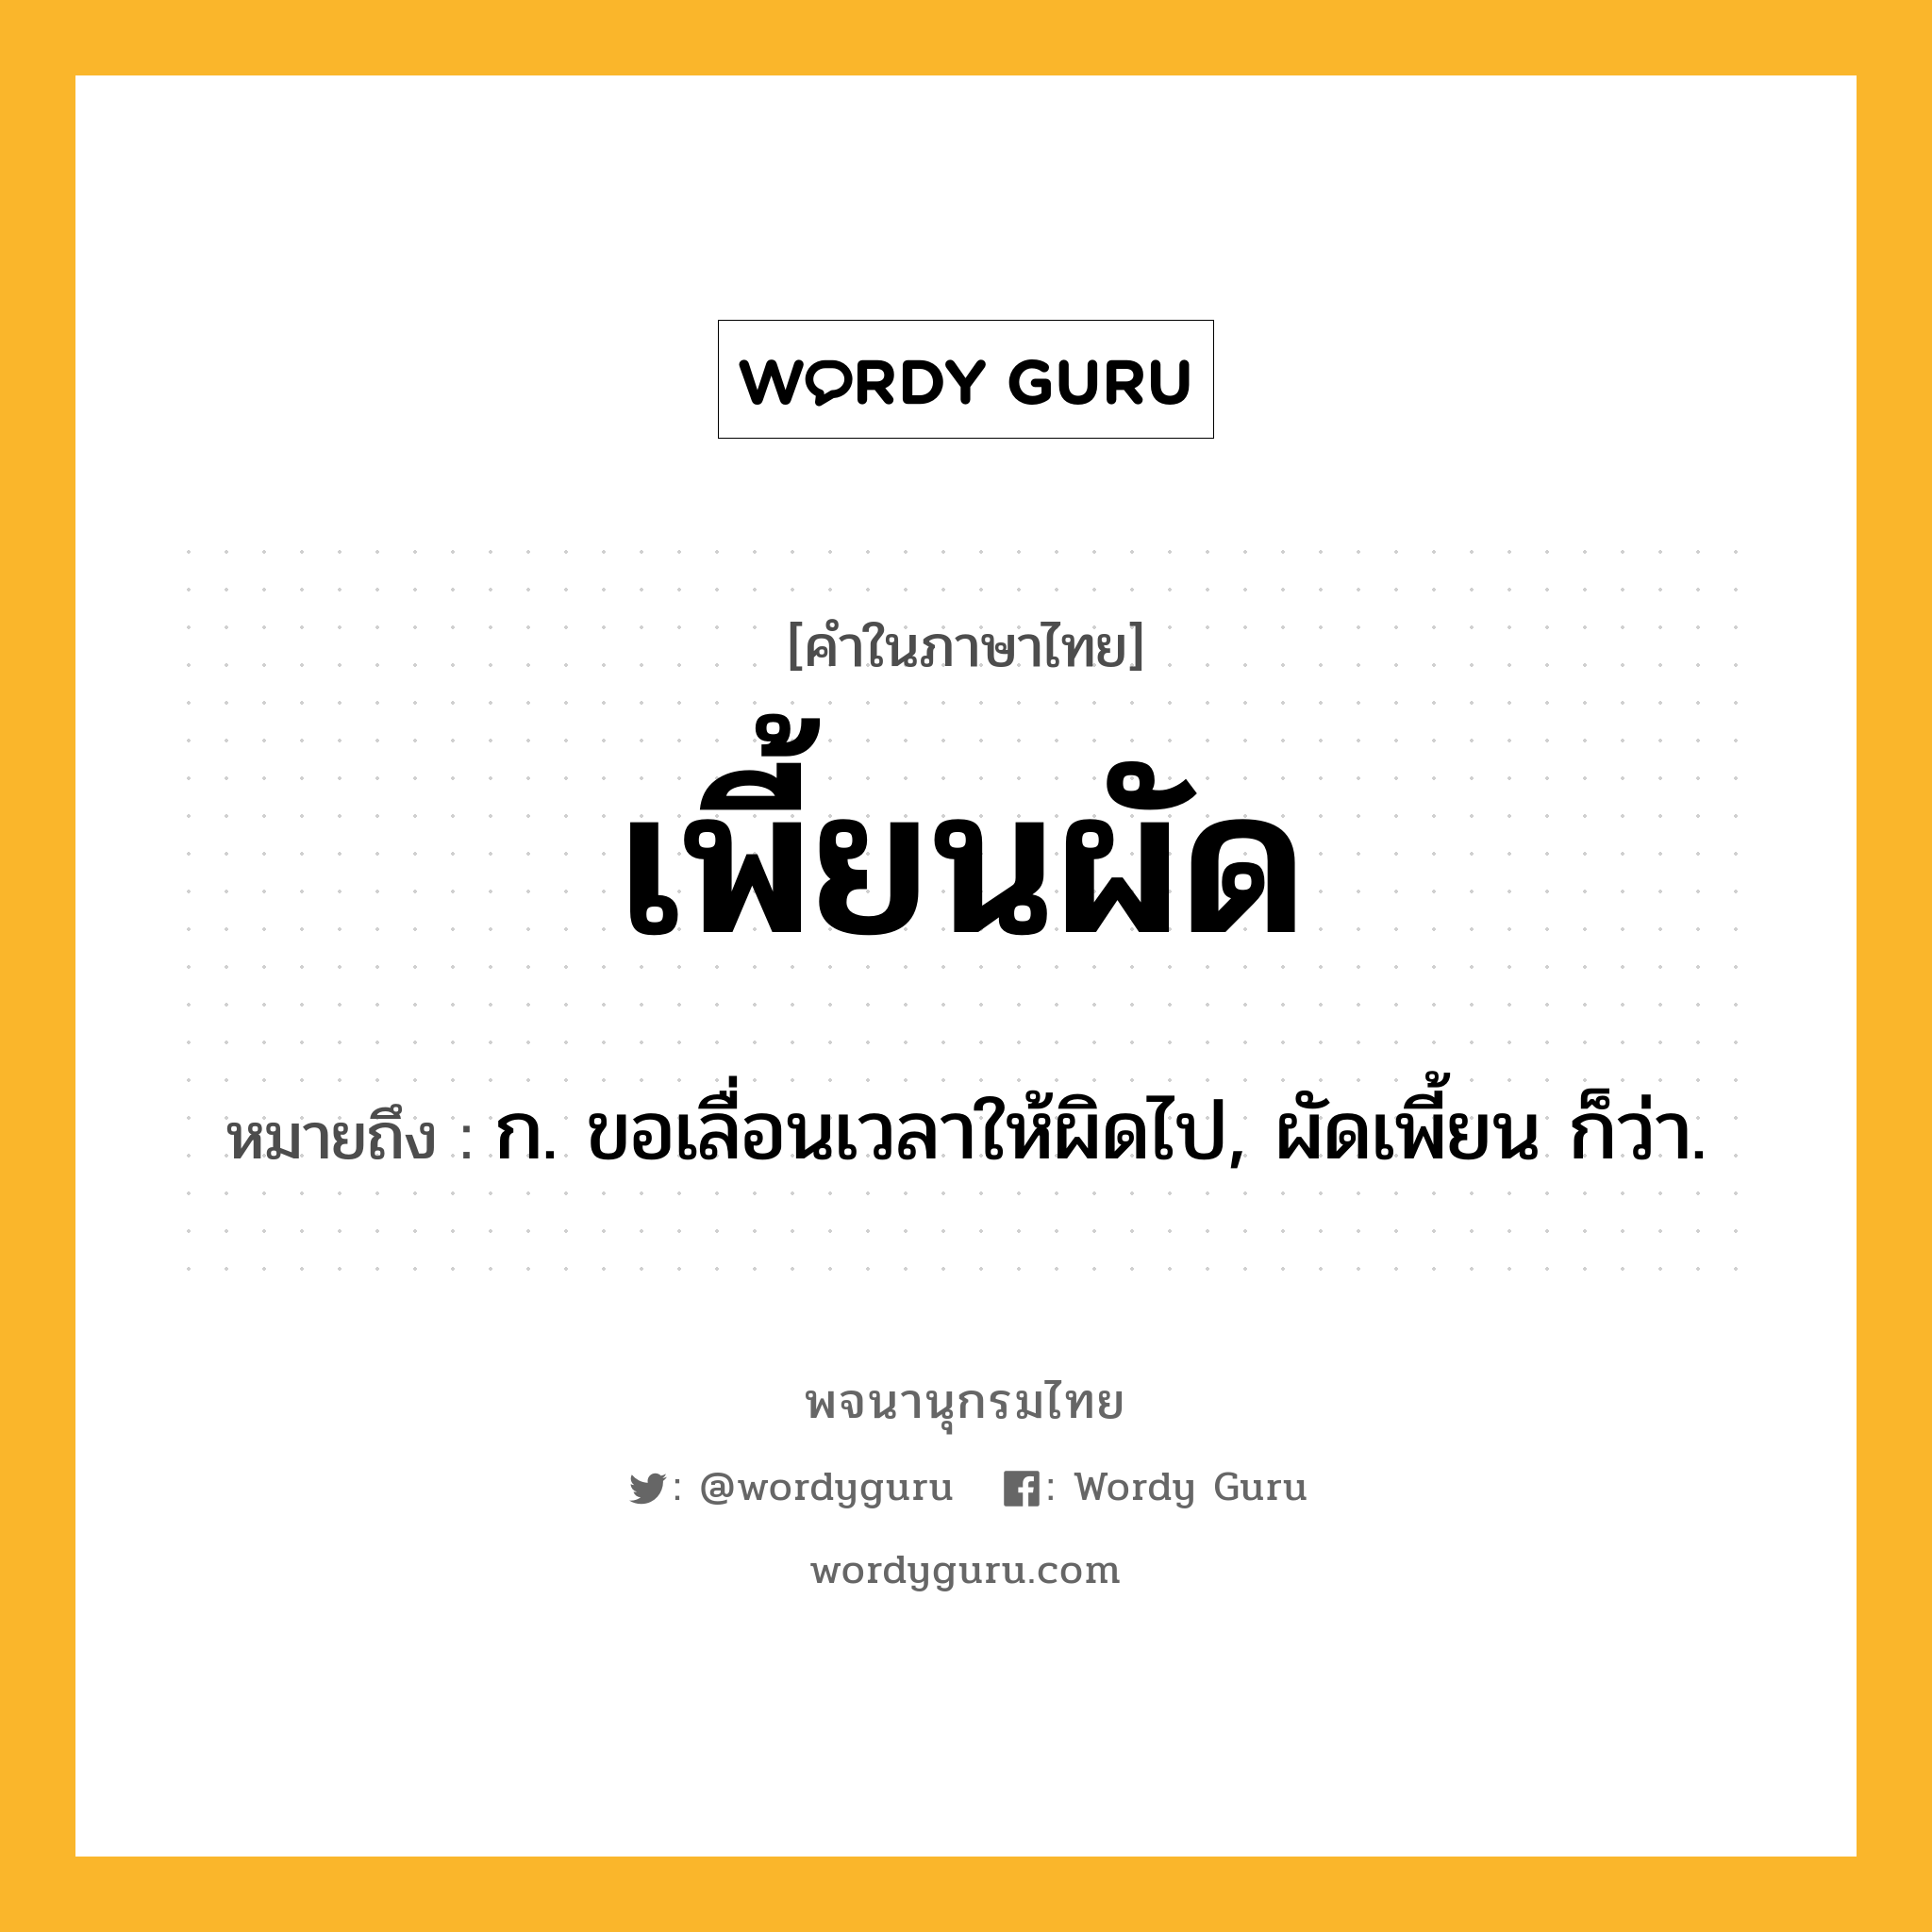 เพี้ยนผัด ความหมาย หมายถึงอะไร?, คำในภาษาไทย เพี้ยนผัด หมายถึง ก. ขอเลื่อนเวลาให้ผิดไป, ผัดเพี้ยน ก็ว่า.